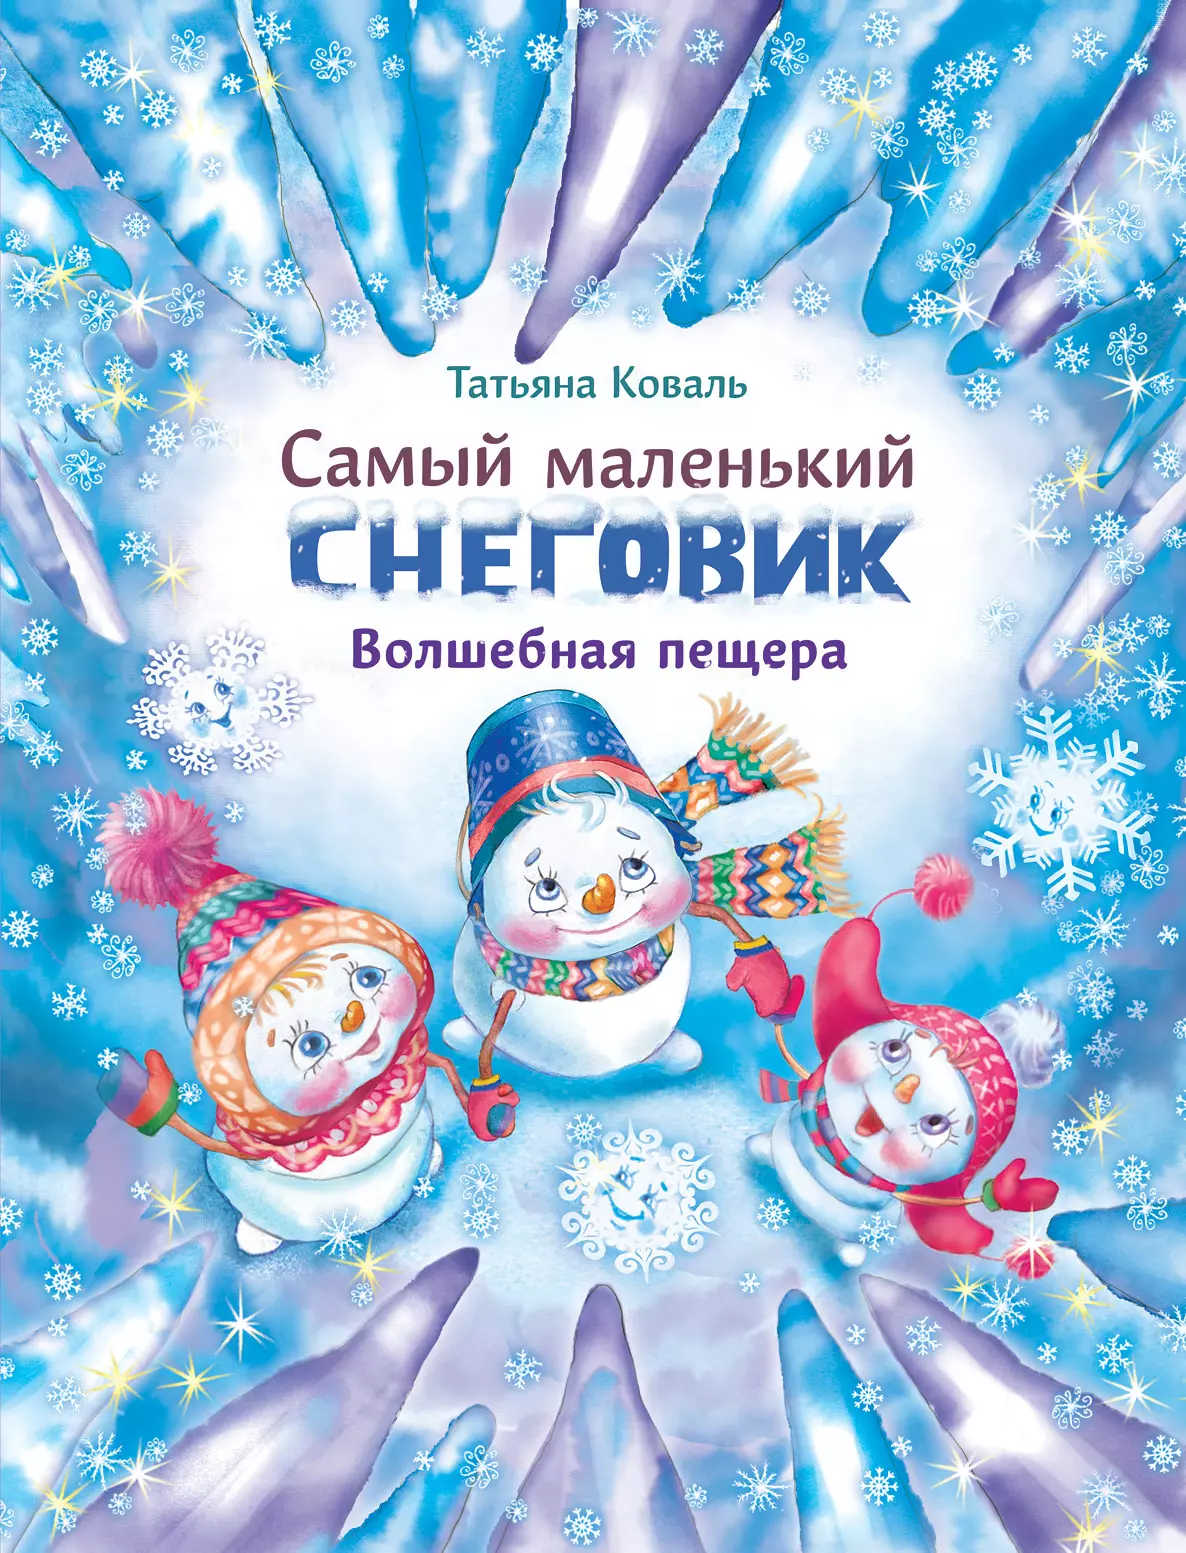 Коваль Татьяна Леонидовна - Самый маленький снеговик. Волшебная пещера. Сказка